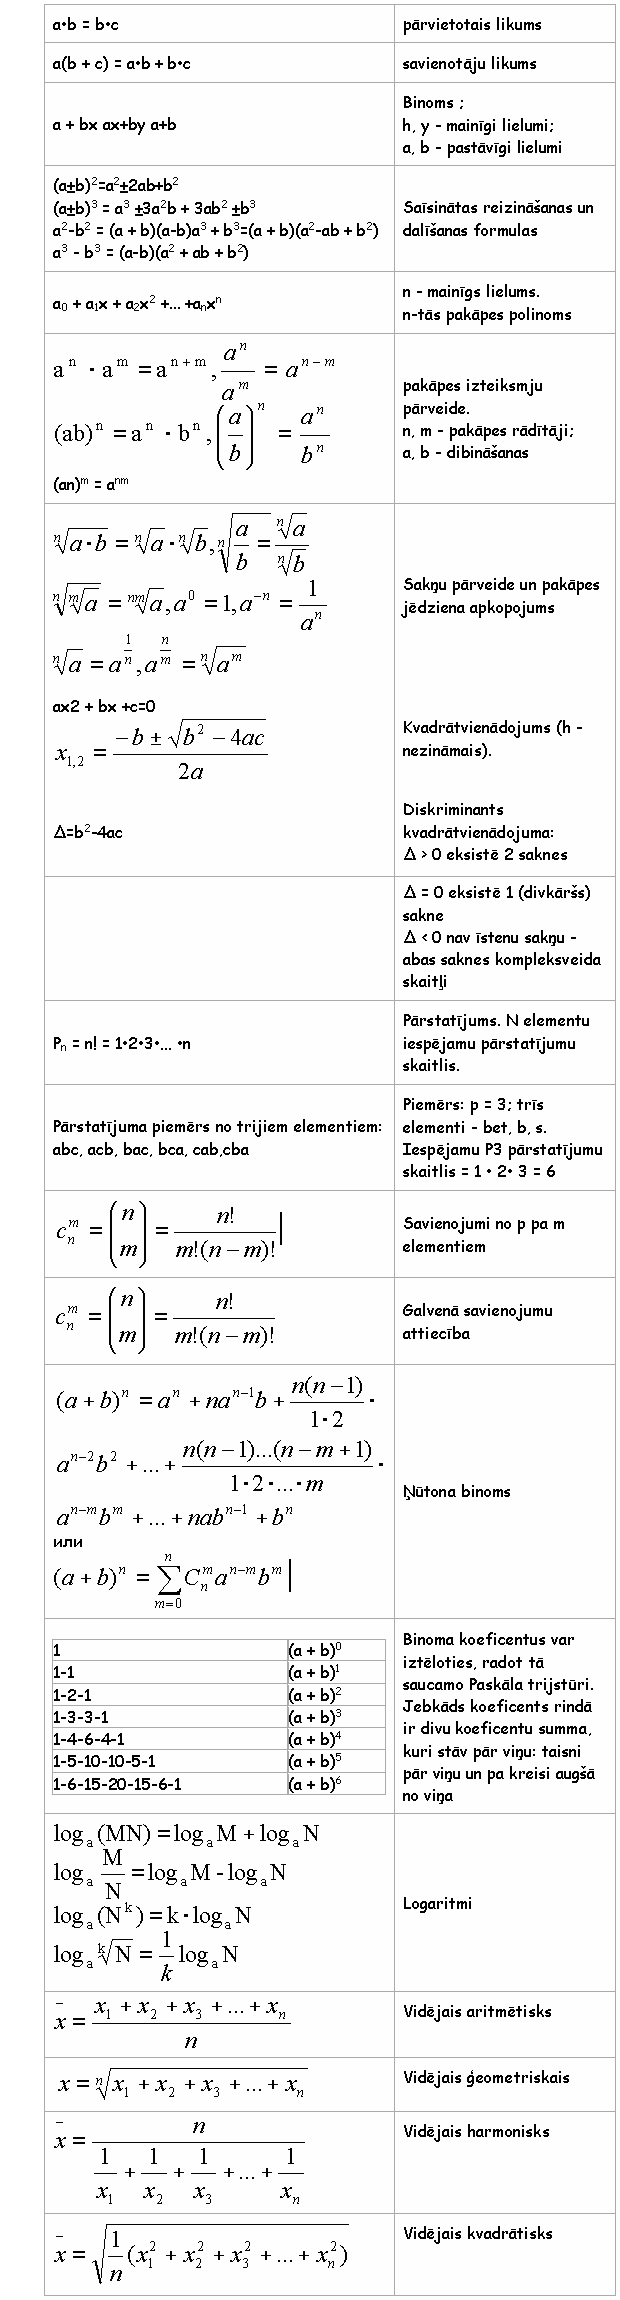 Matemātikas aprēķināšanas formulas